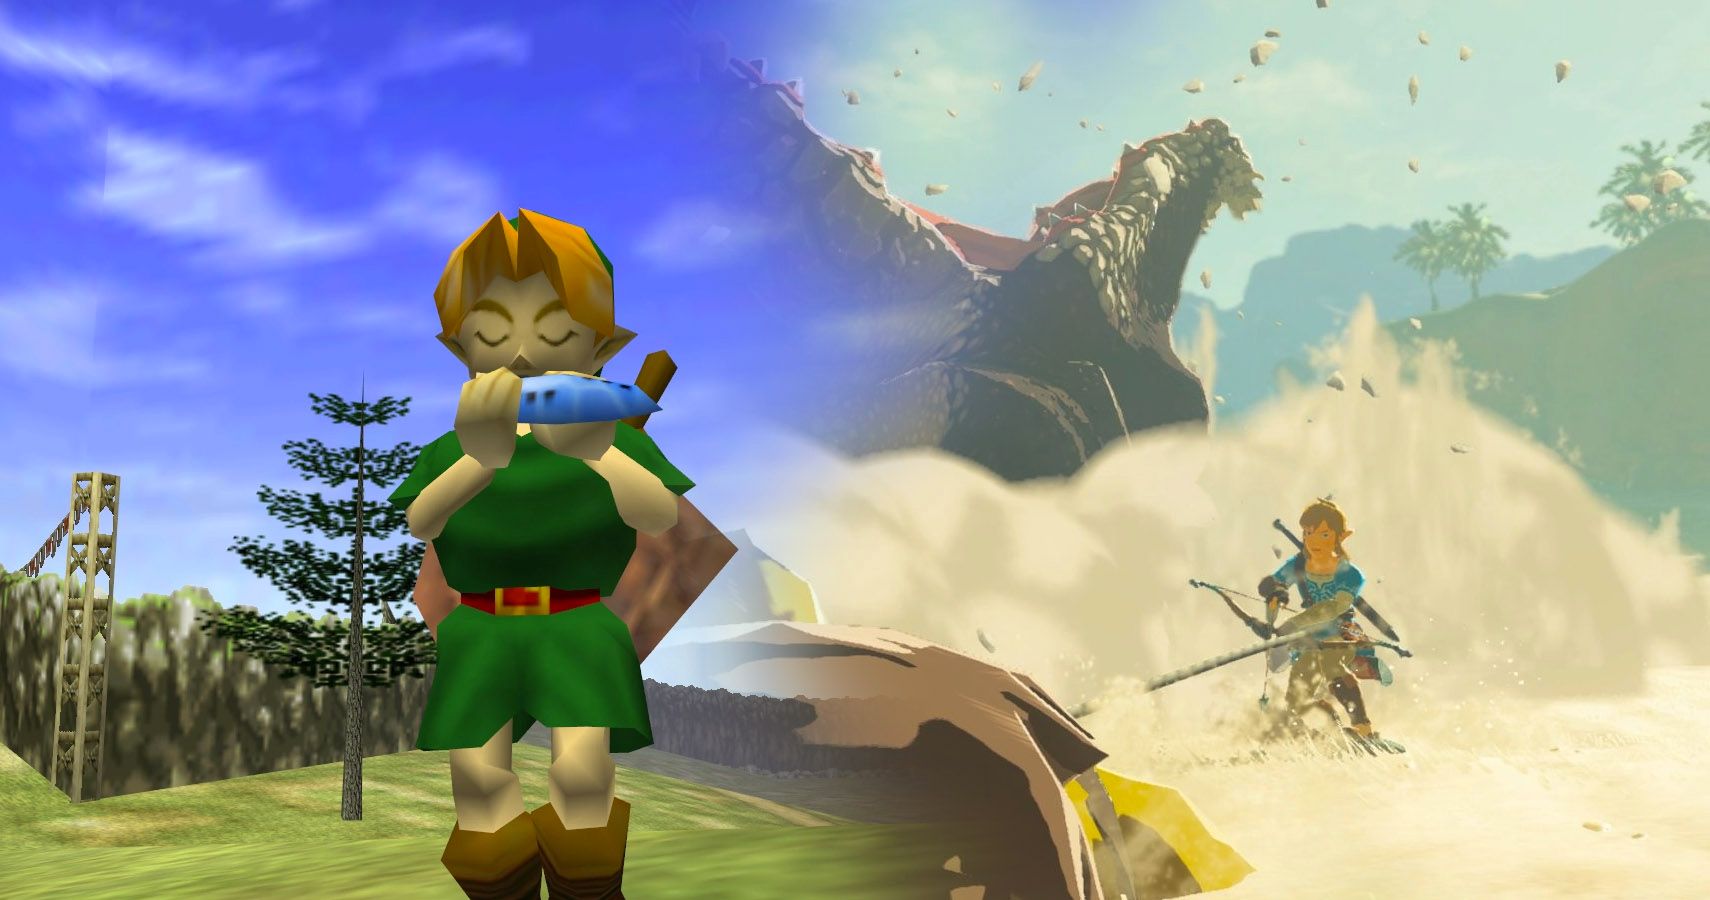 The Legend of Zelda: Twilight Princess - Metacritic